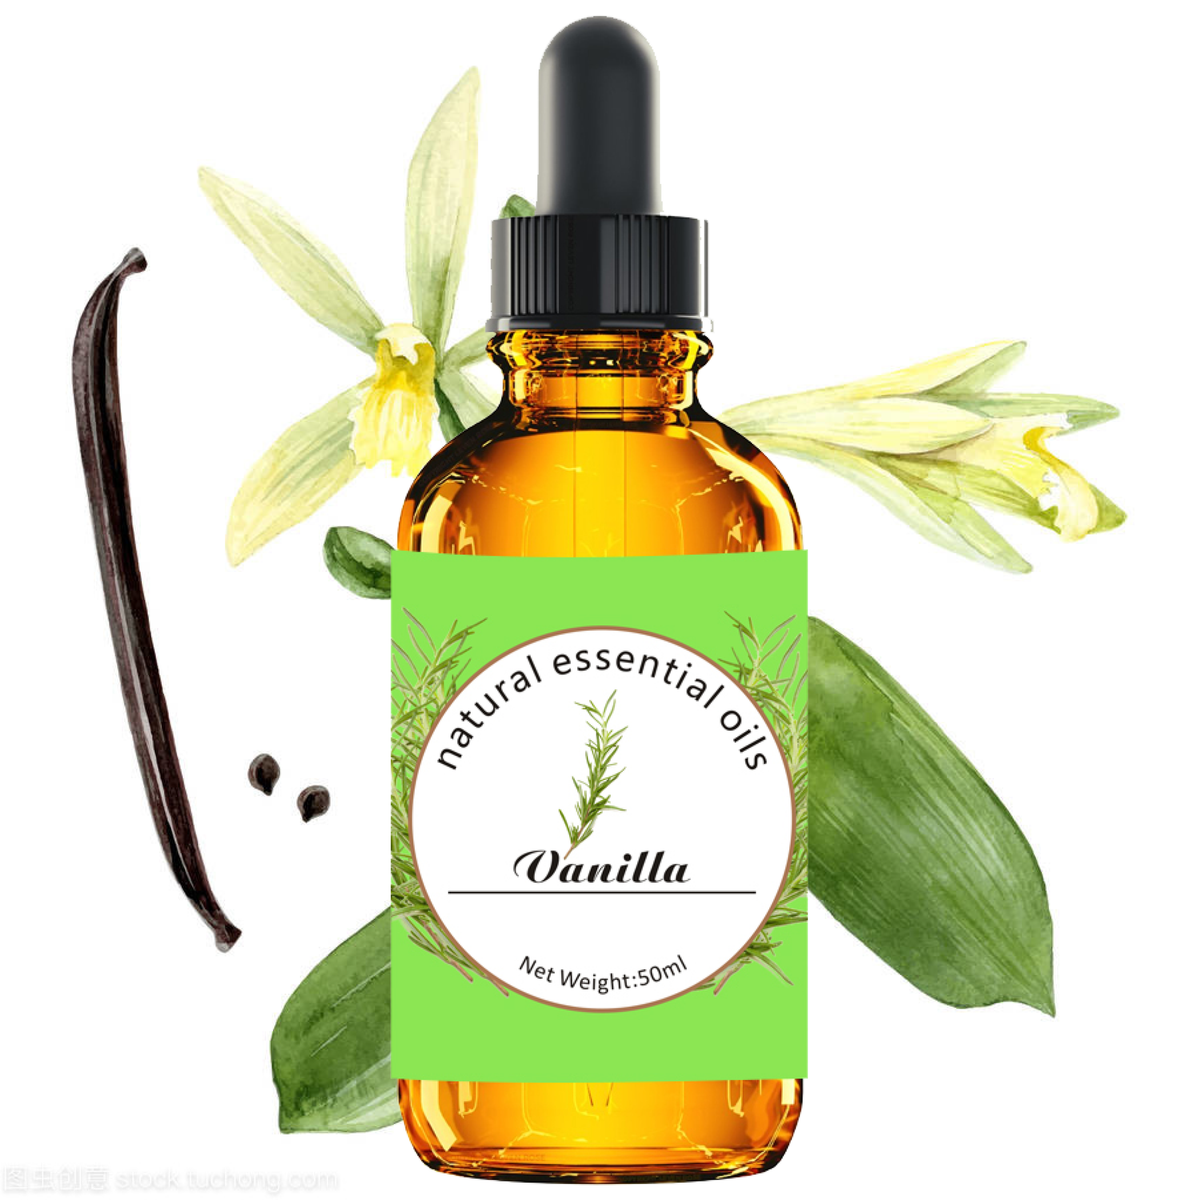 Vanilla - 50ml pure natural essential oil